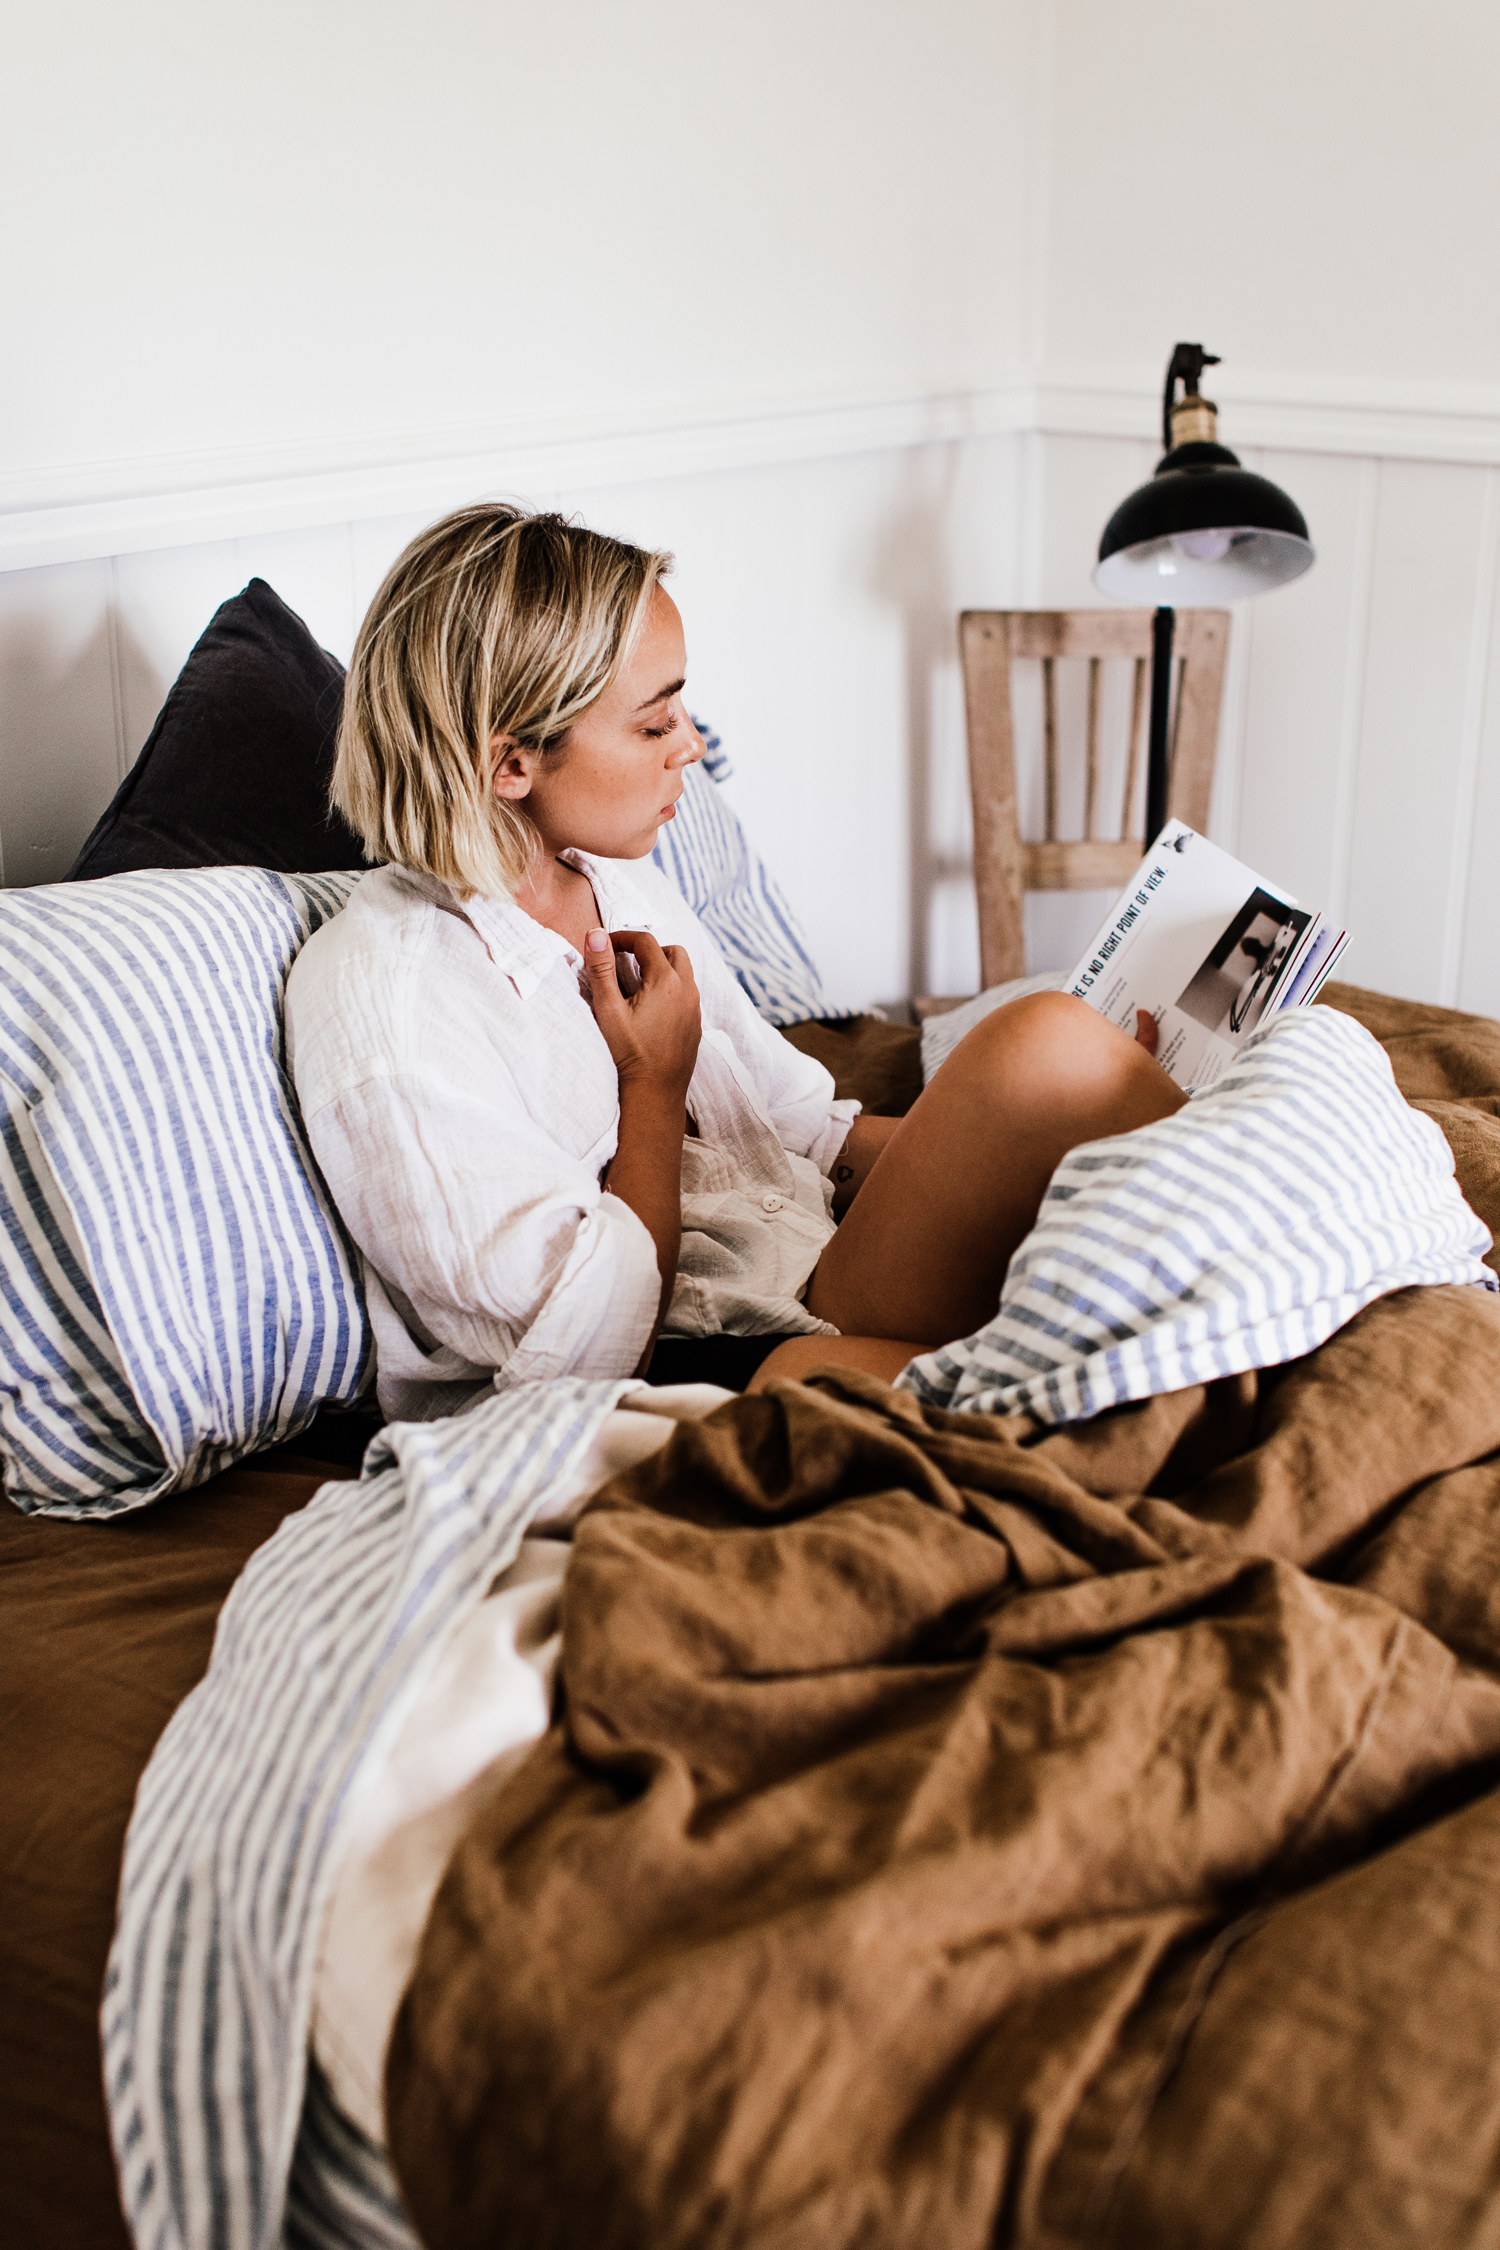 6 recomendaciones para cuidar tu ropa de cama y extender su vida útil